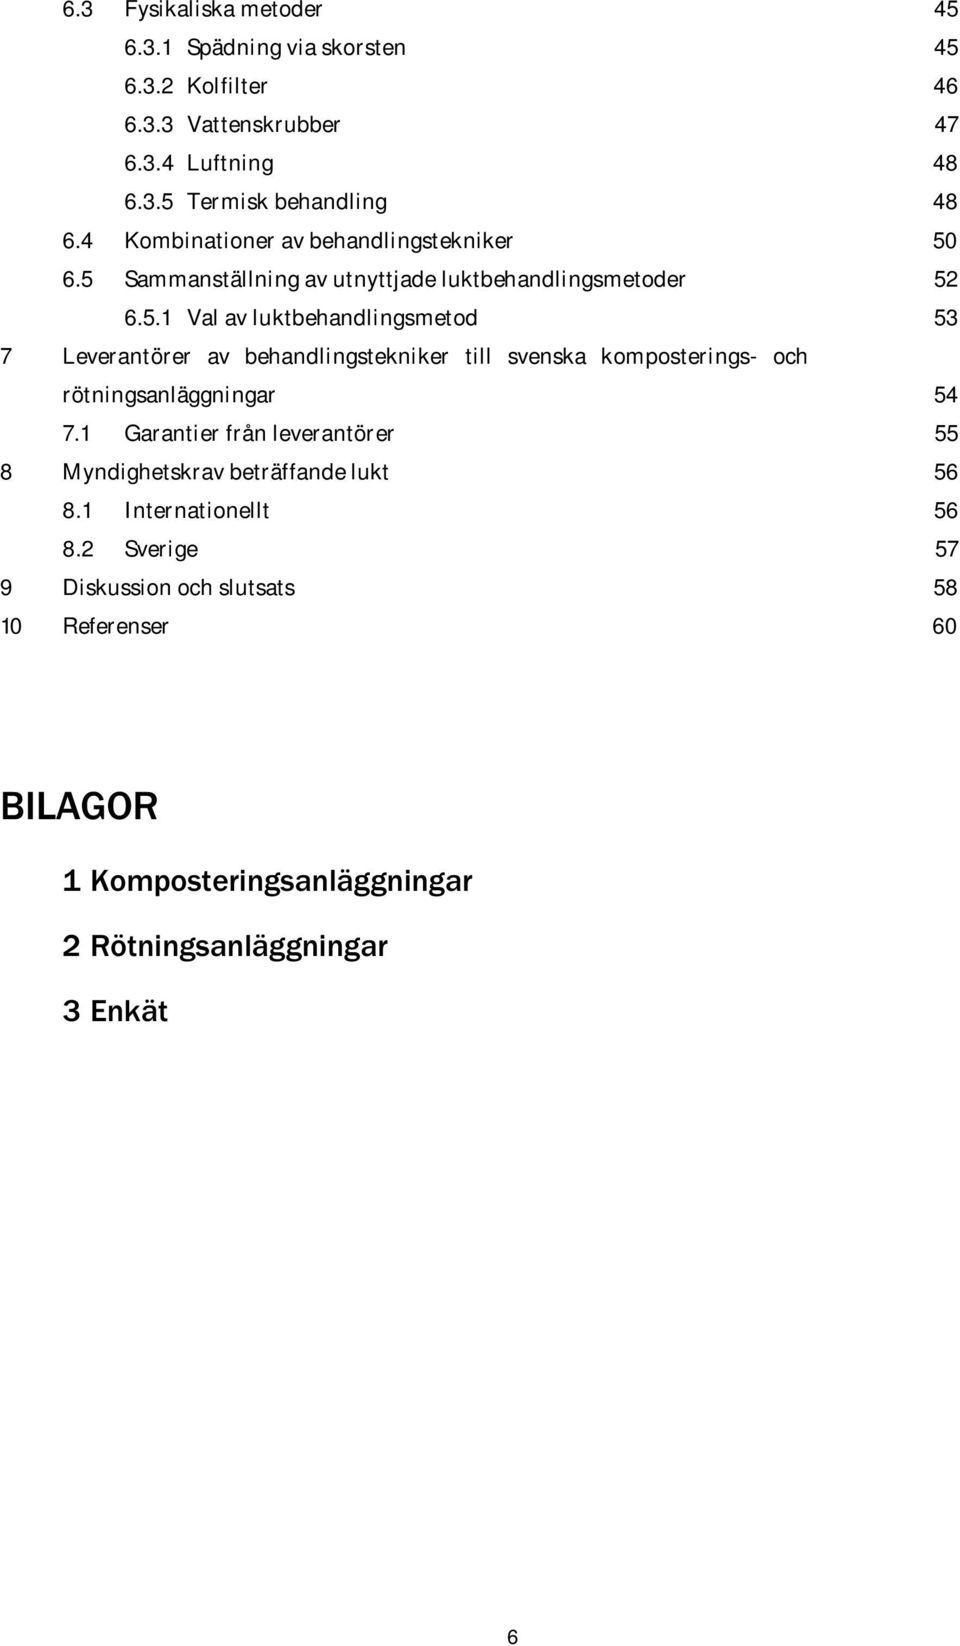 6.5 Sammanställning av utnyttjade luktbehandlingsmetoder 52 6.5.1 Val av luktbehandlingsmetod 53 7 Leverantörer av behandlingstekniker till svenska komposterings- och rötningsanläggningar 54 7.